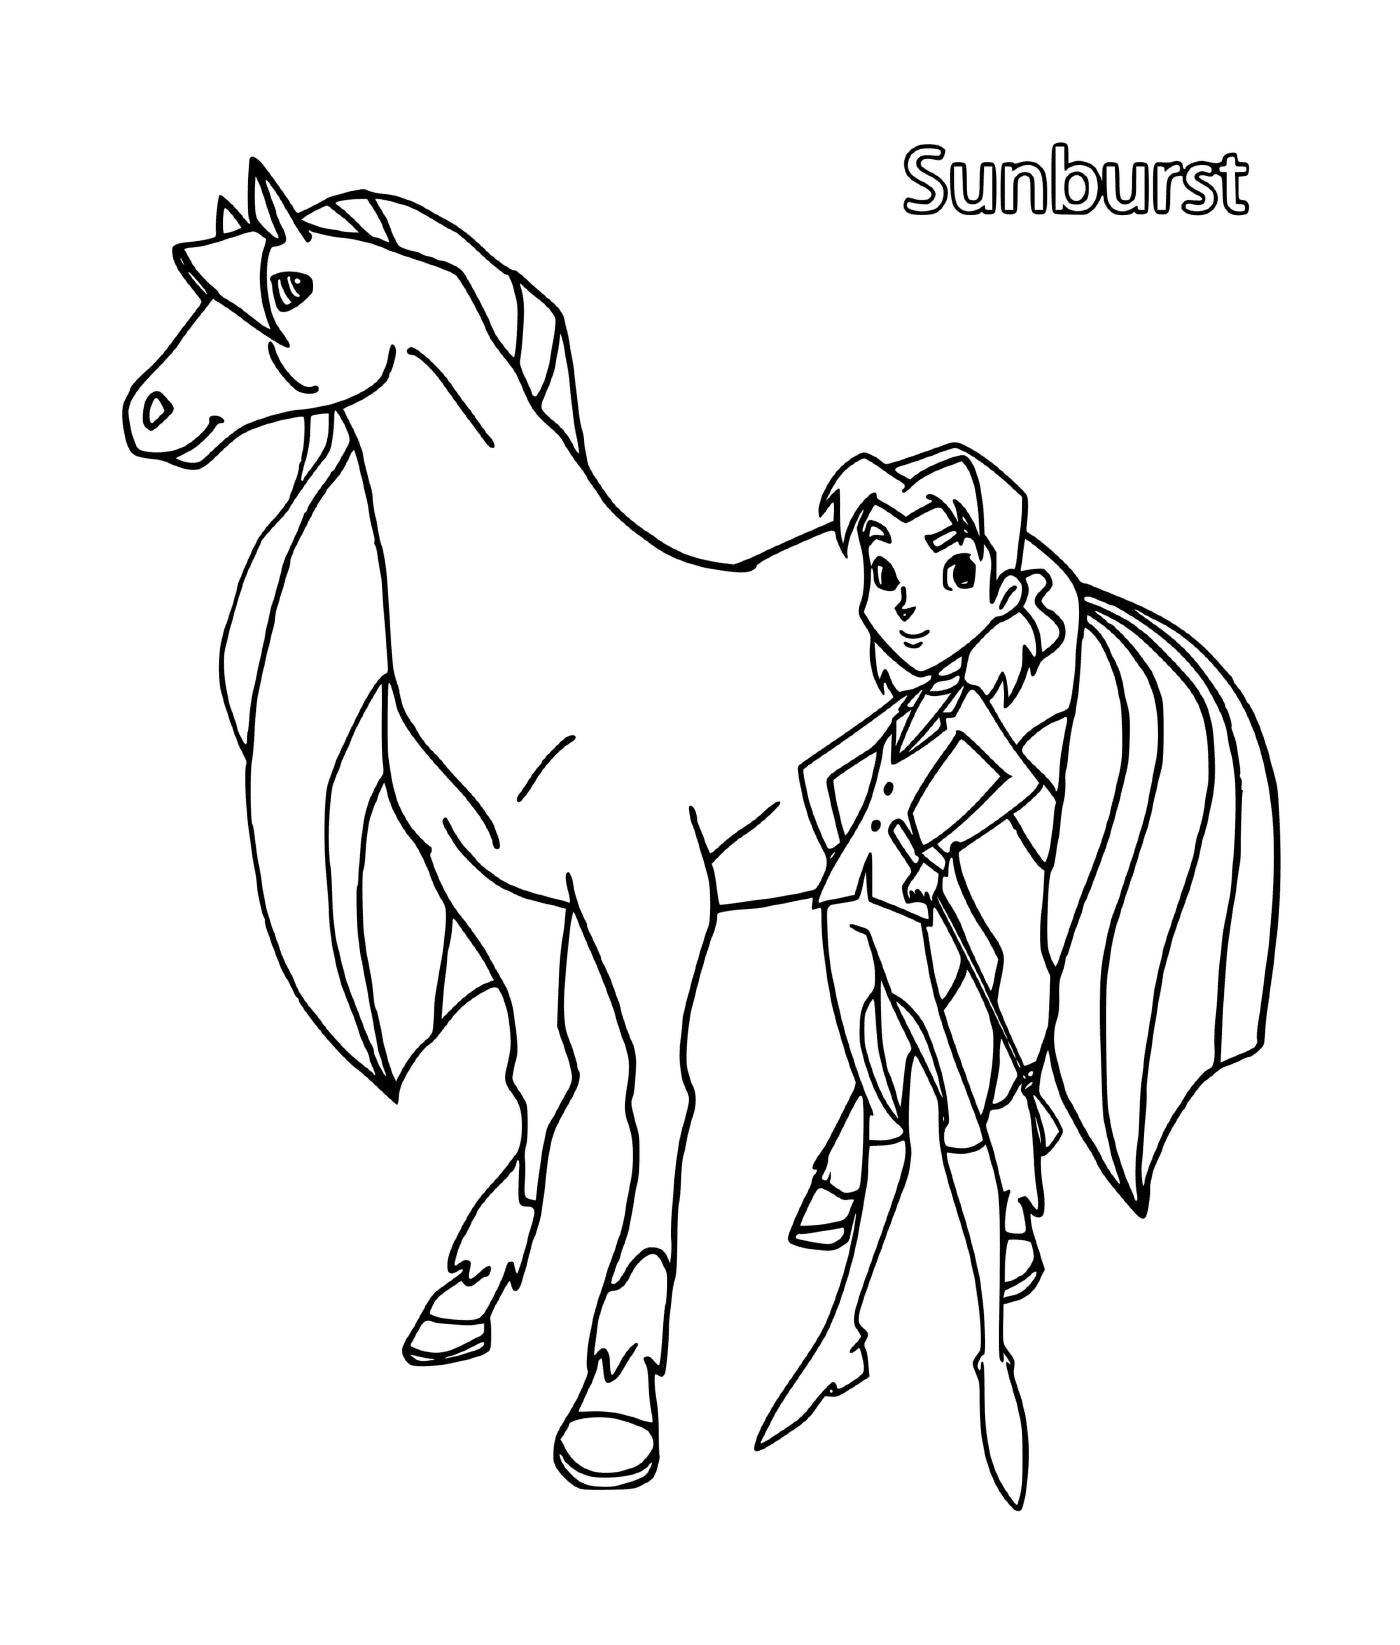  सनबॉरस नाम का खूबसूरत घोड़ा 